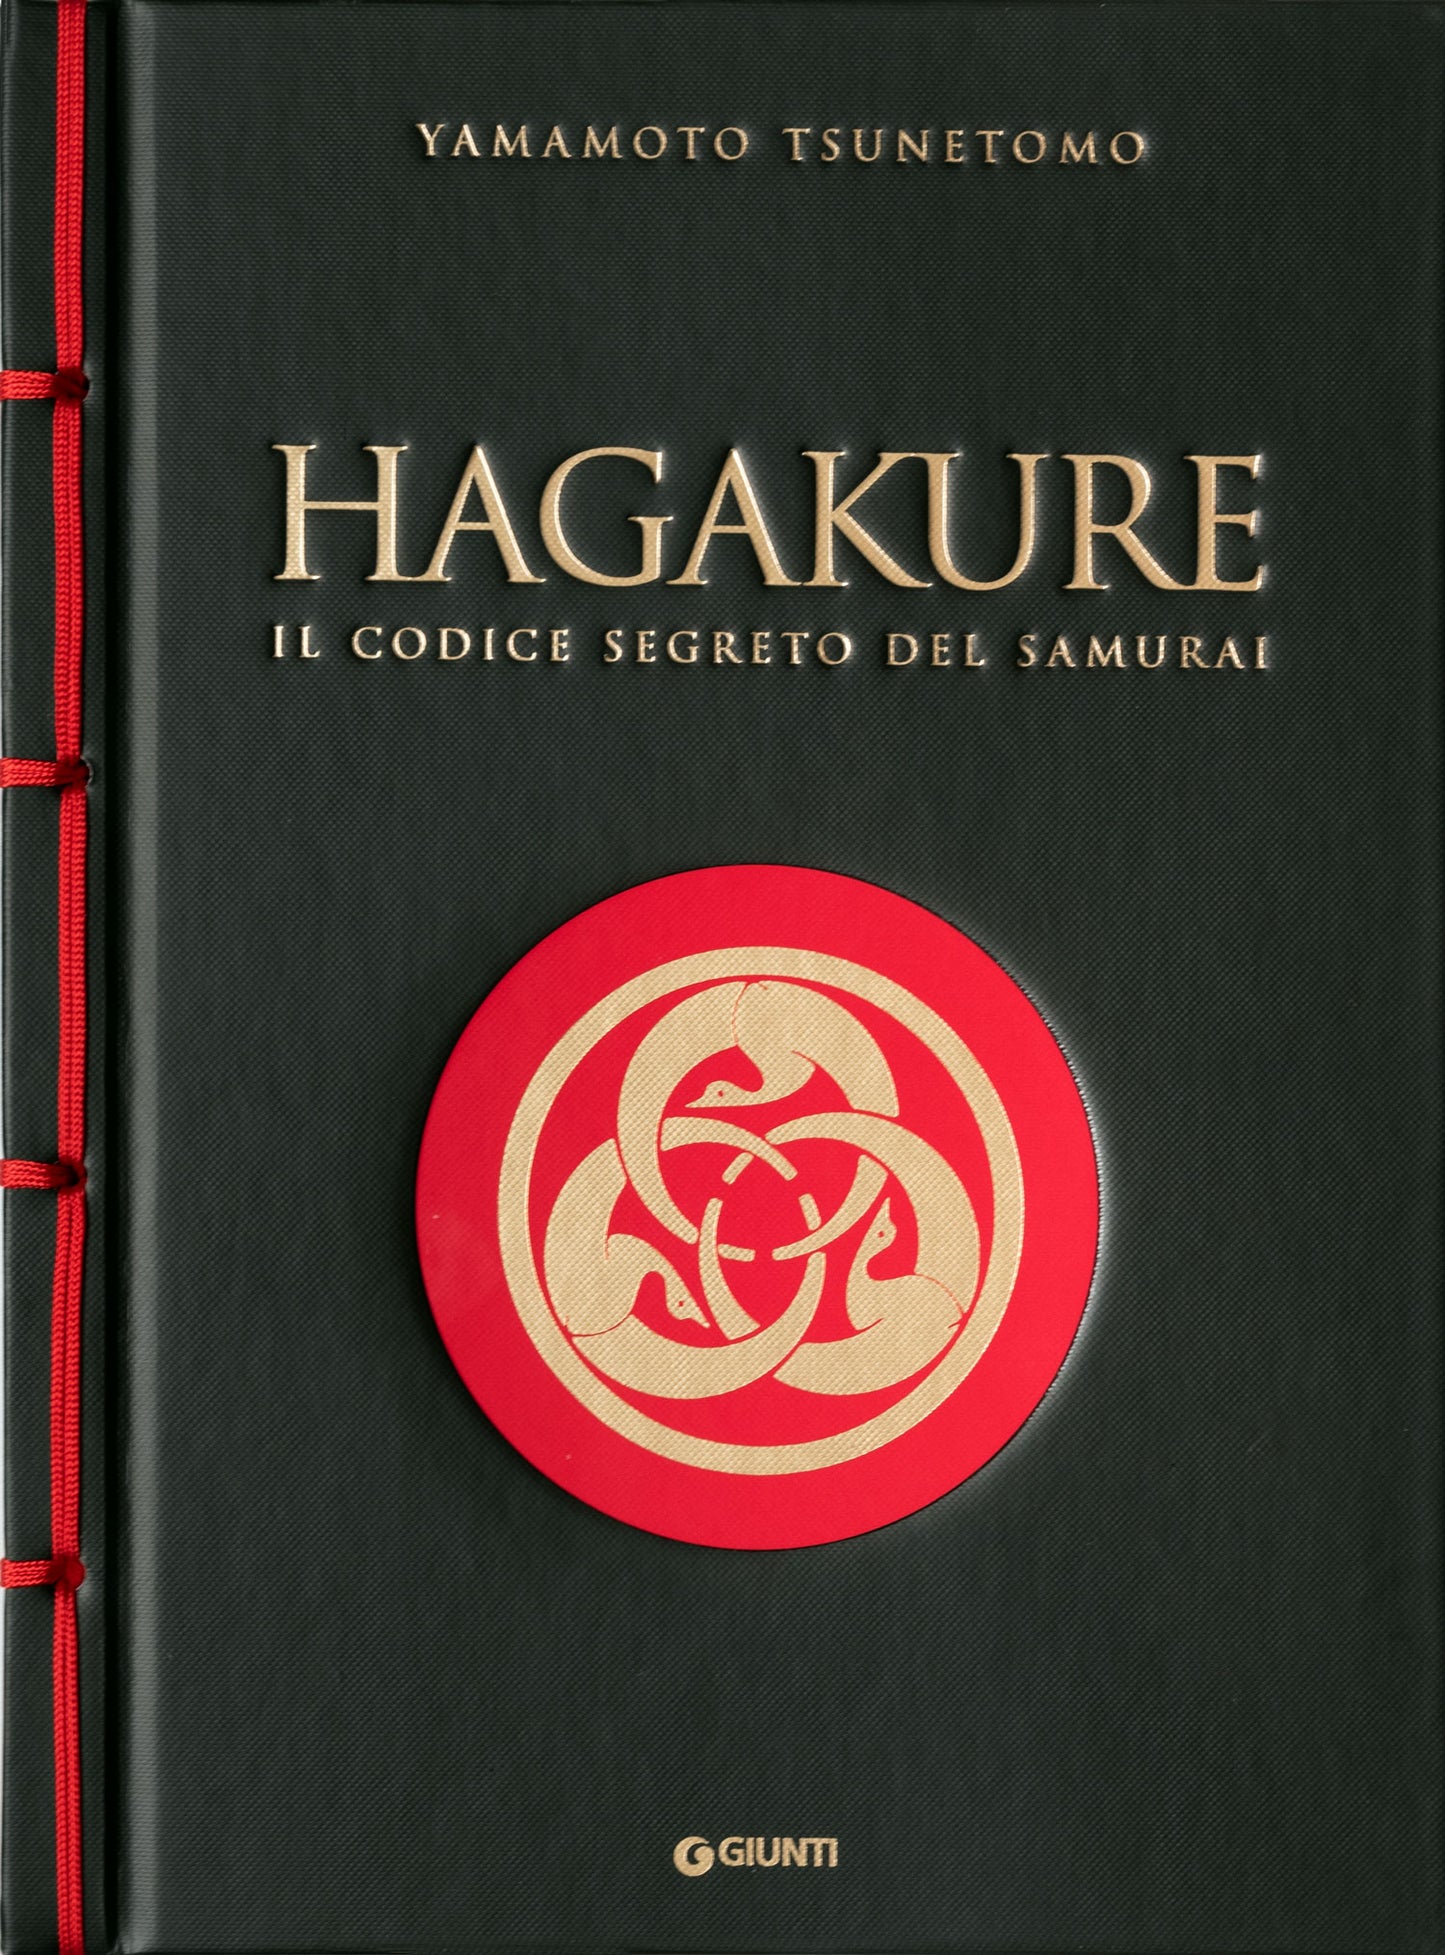 Hagakure::Il codice segreto del samurai